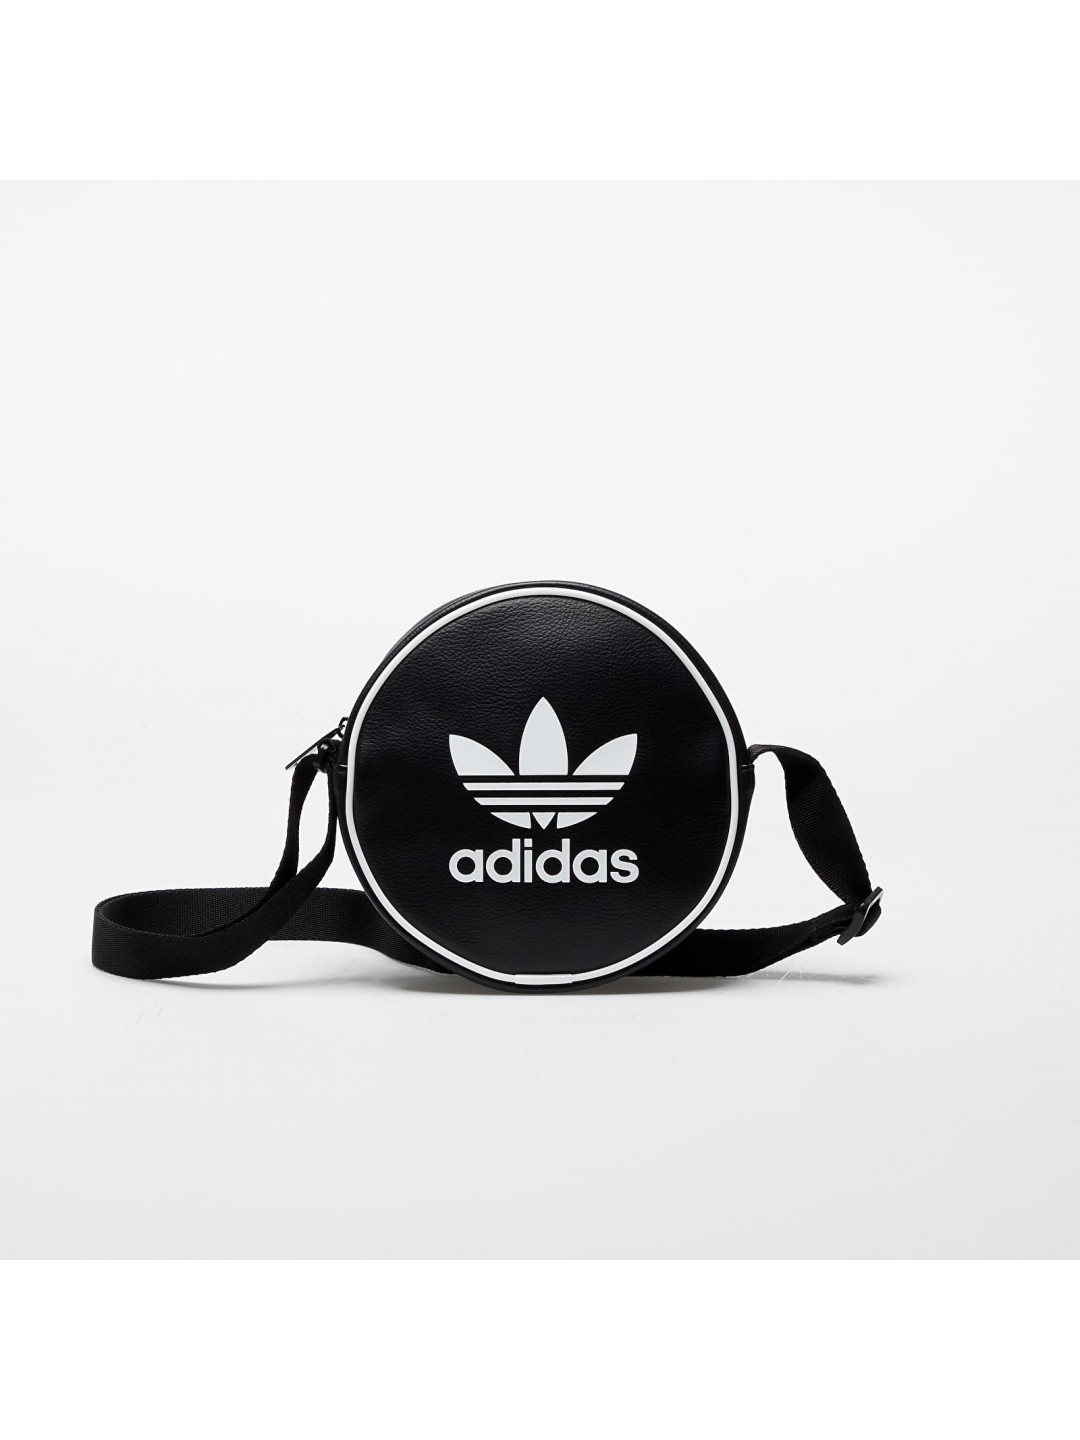 Adidas Adicolor Classic Round Bag Black